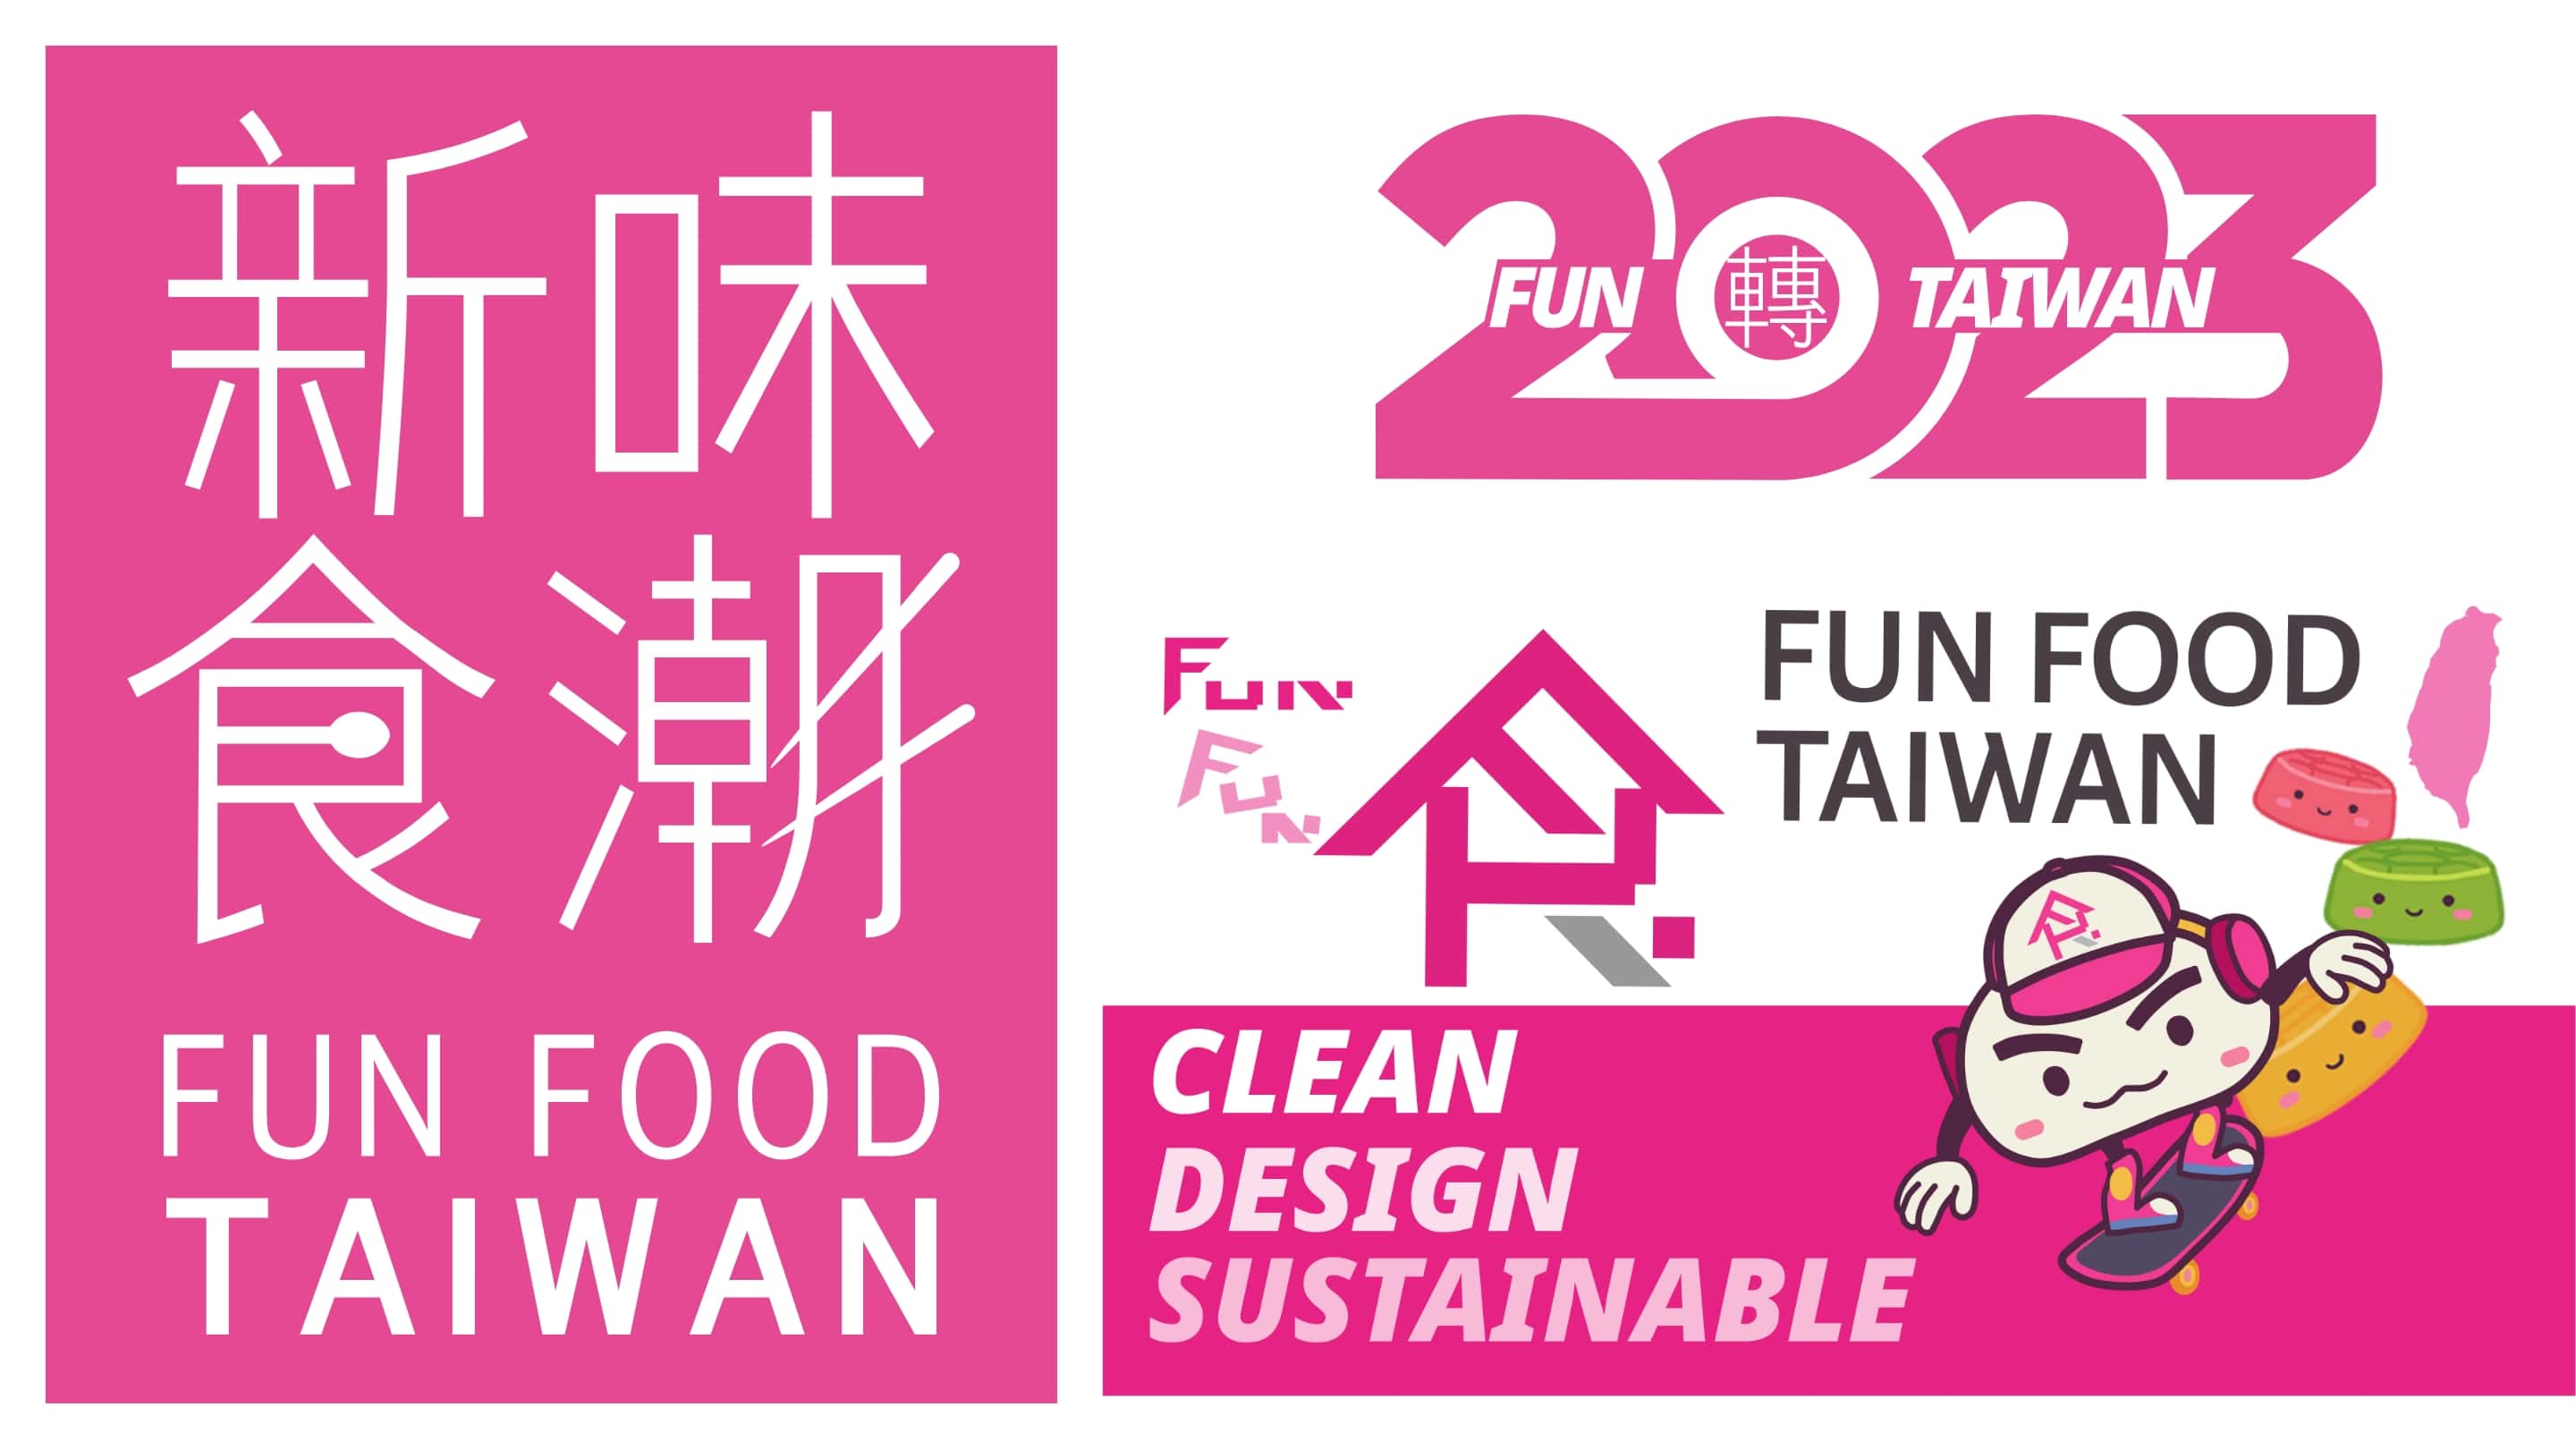 ----------------FUN FOOD TAIWAN--------------